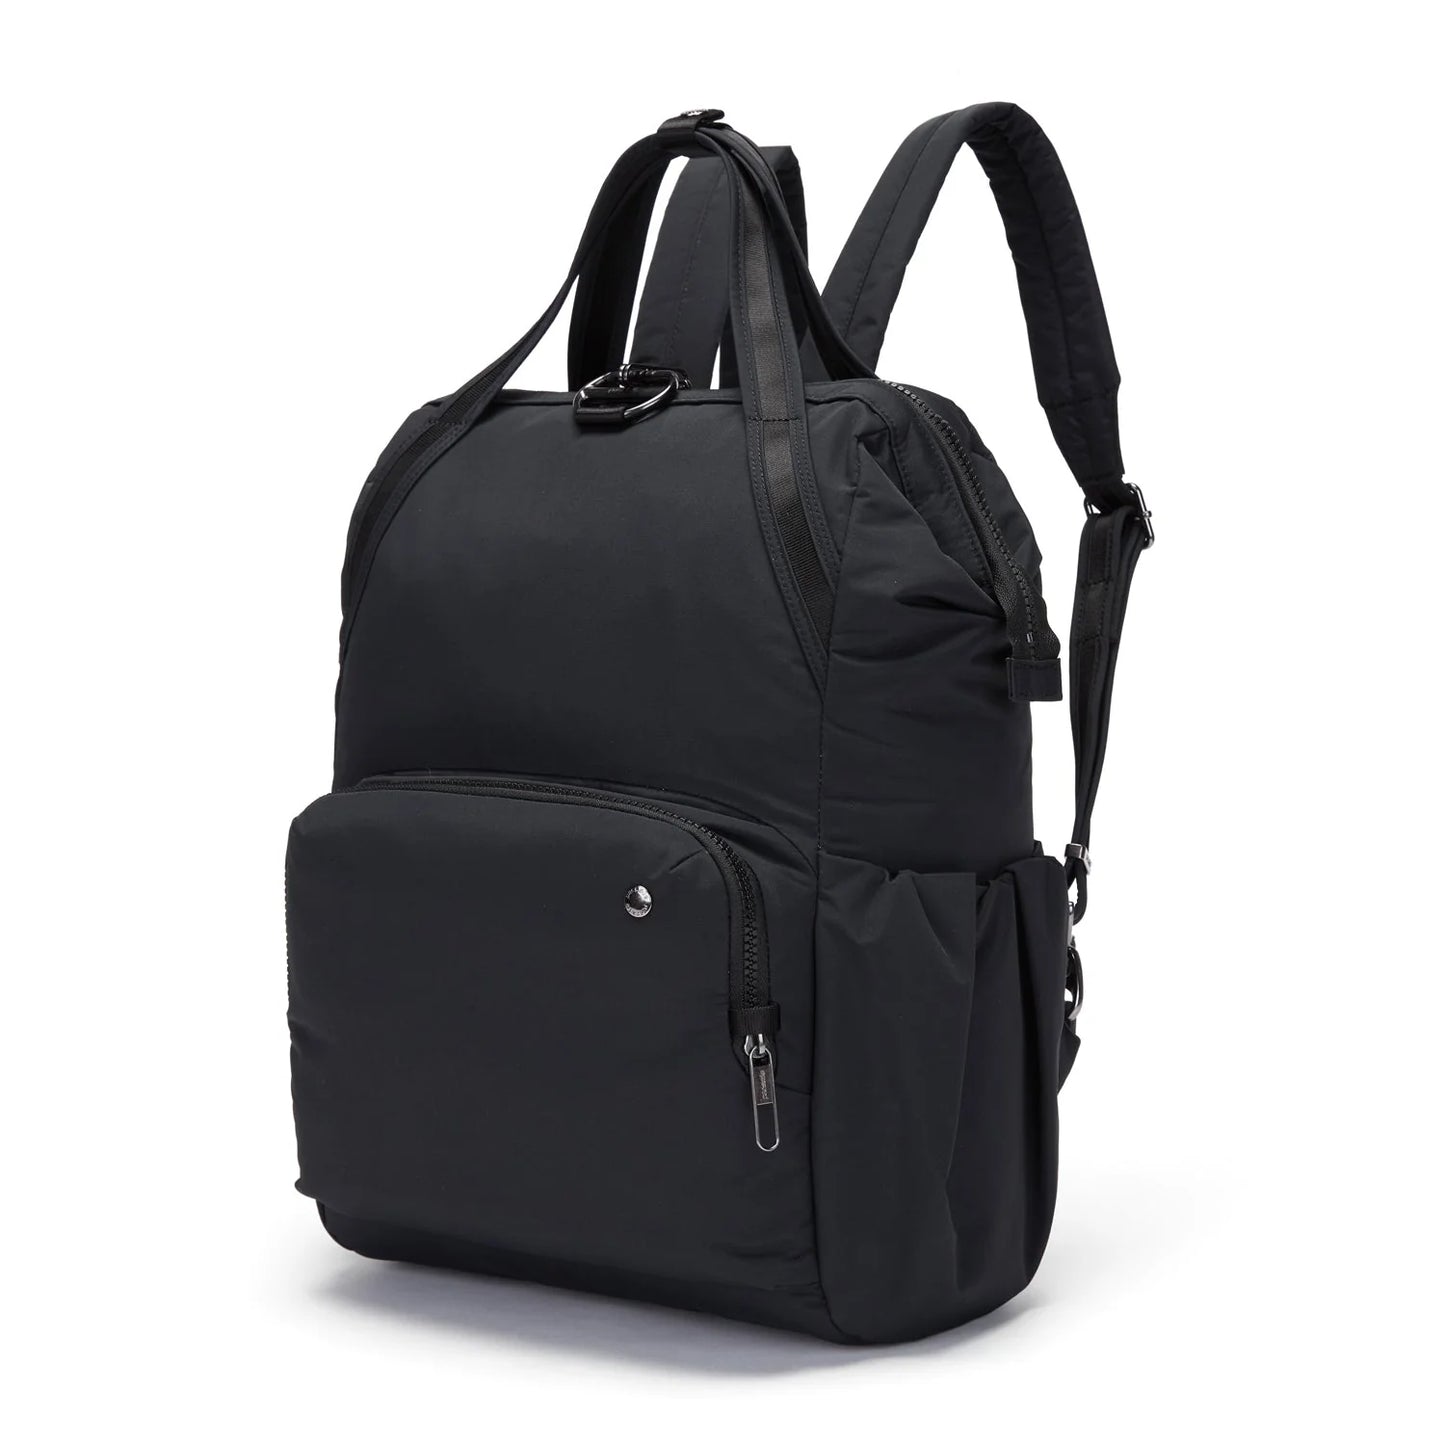 PACSAFE CITYSAFE CX BACKPACK ECONYL BLACK – Sydney Luggage